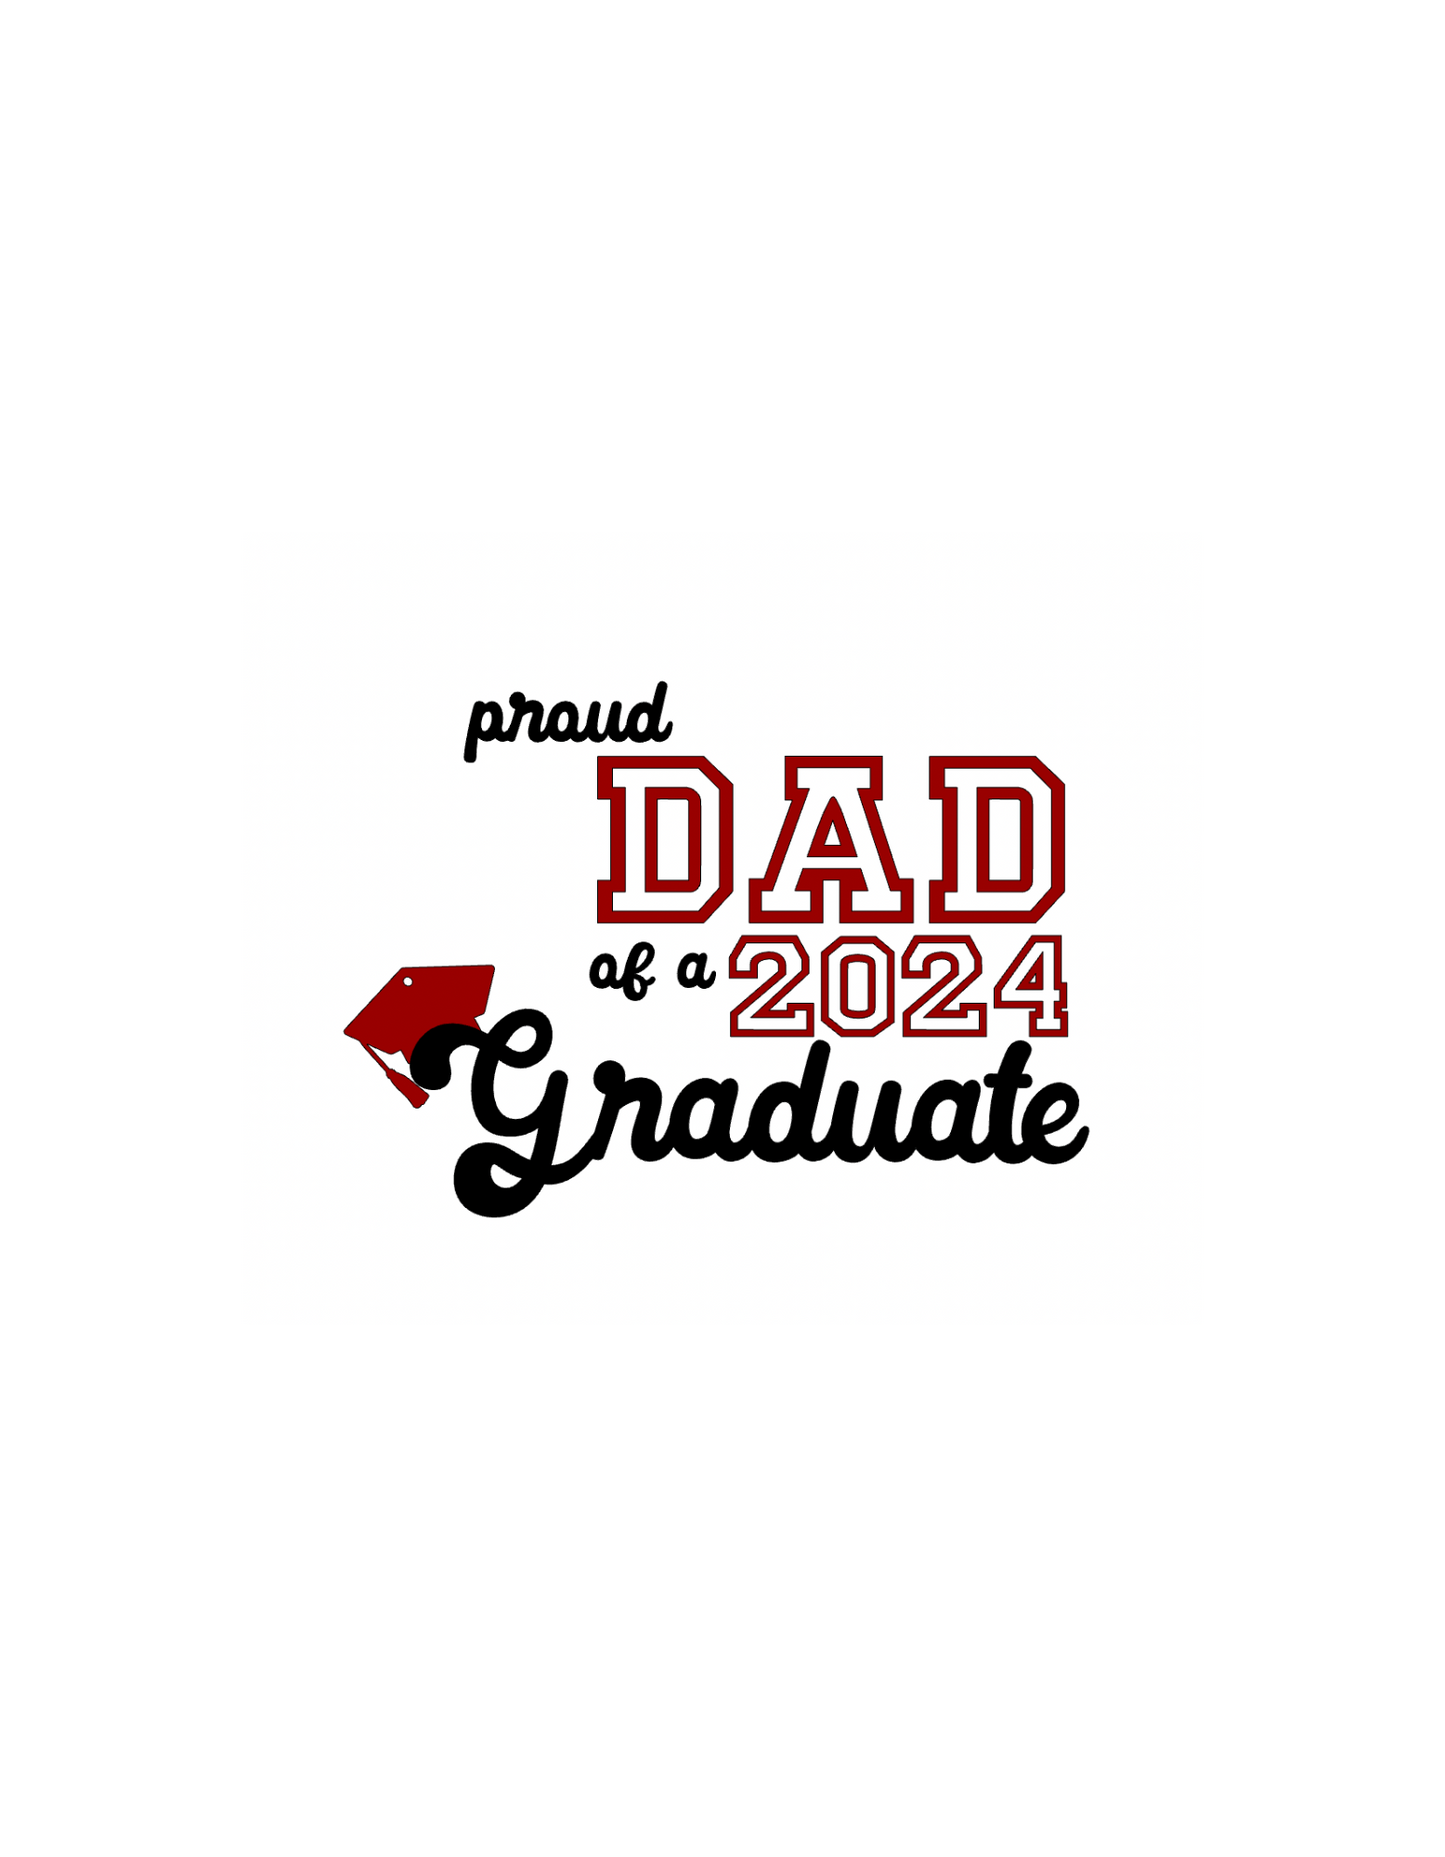 Dad of Graduate 2024